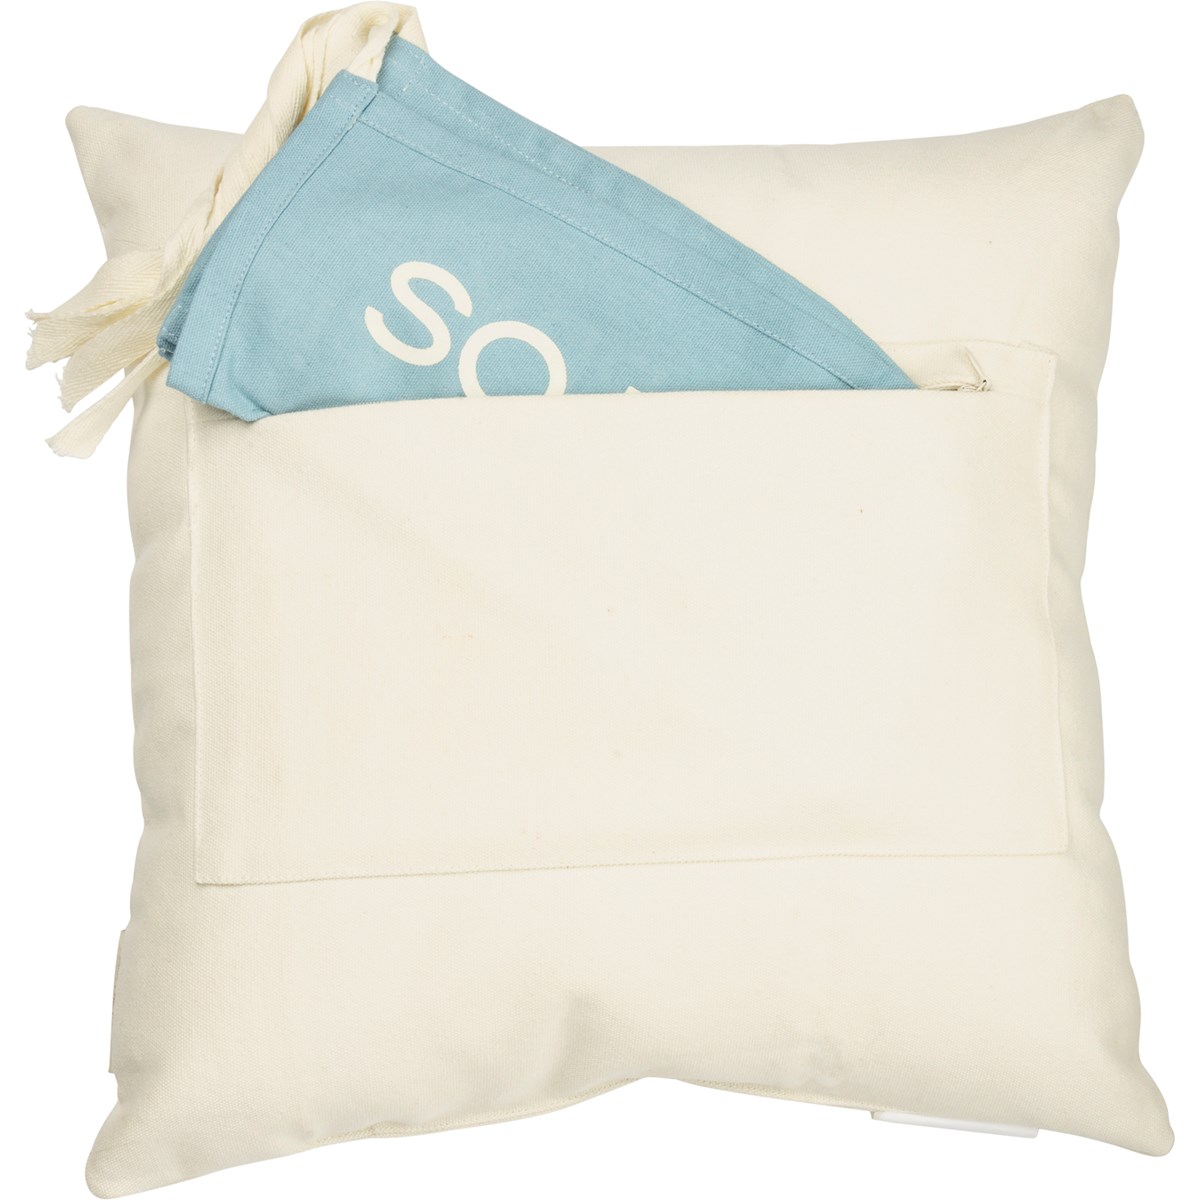 Milestone Pillow - Bear - 15" x 15" - Cotton, Polyester, Ribbon, Zipper